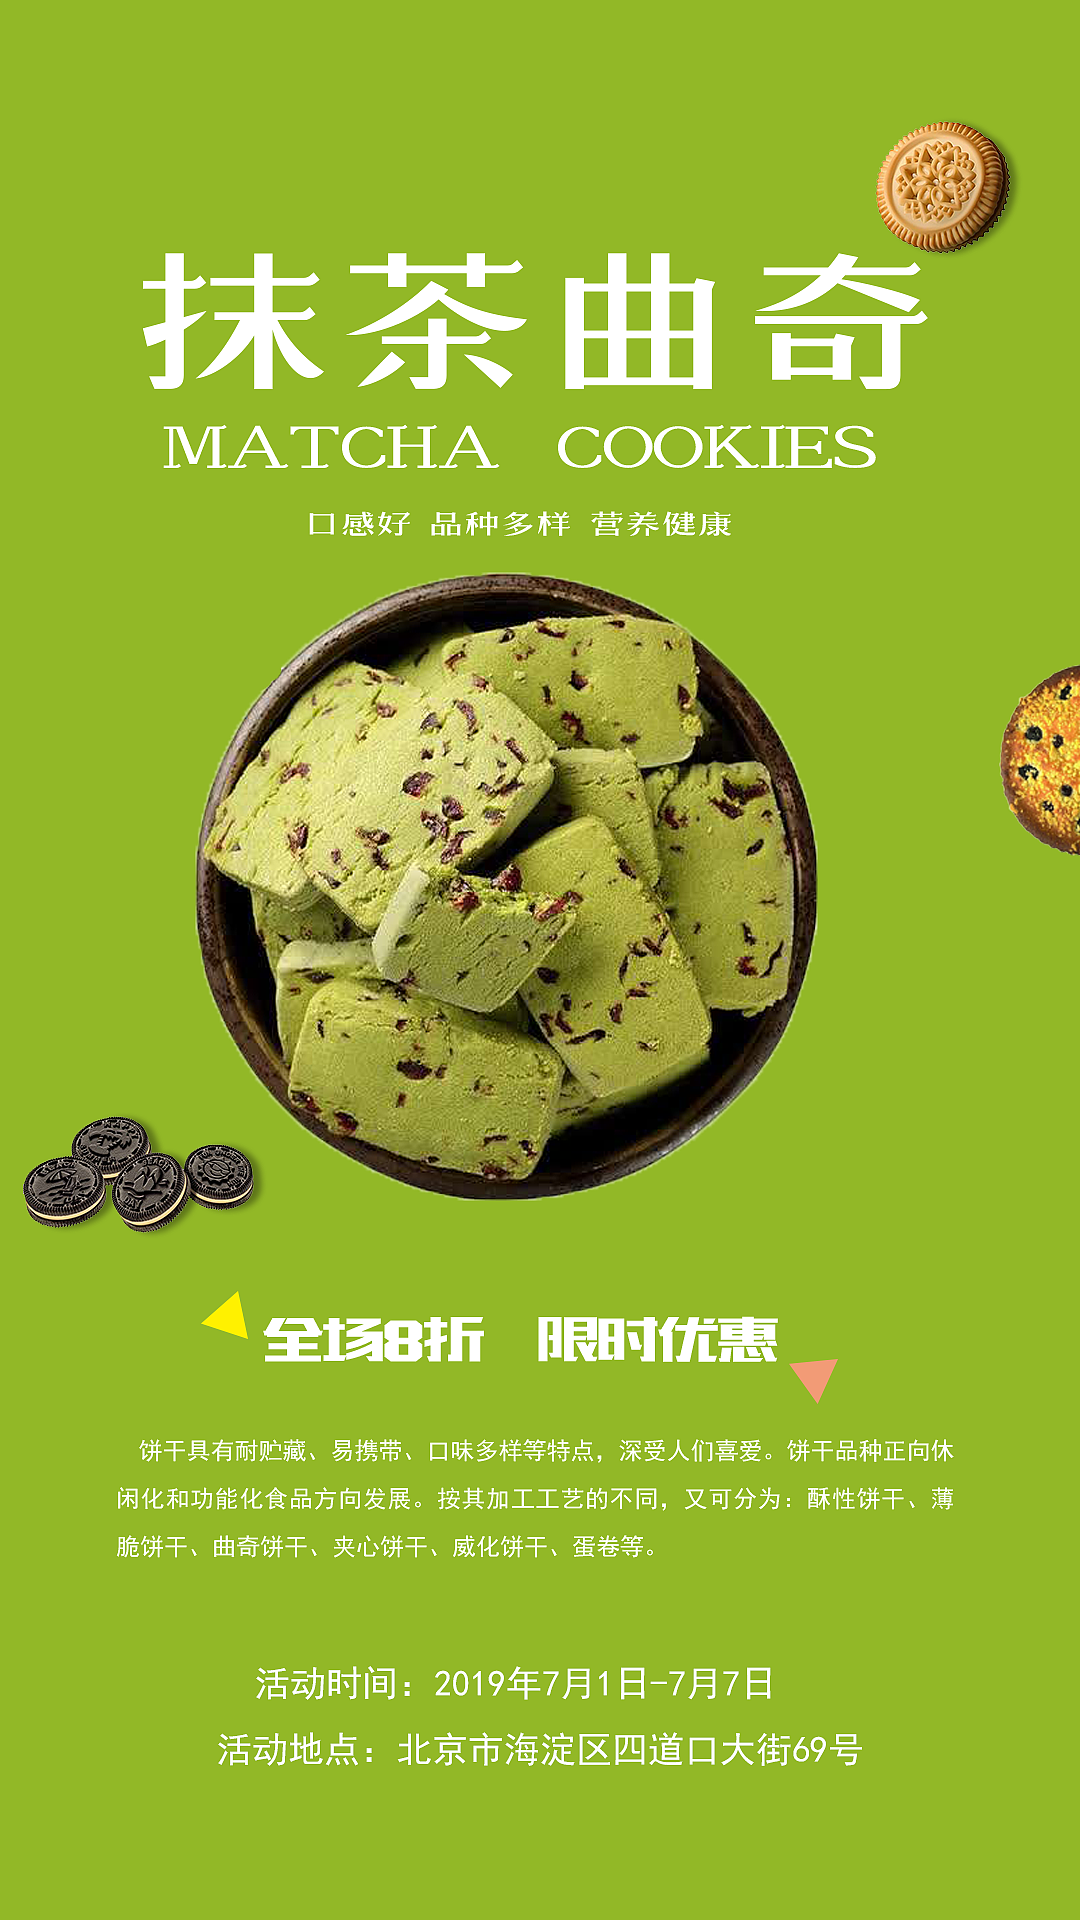 少林寺禅知味酥饼包装设计_第4页-CND设计网,中国设计网络首选品牌